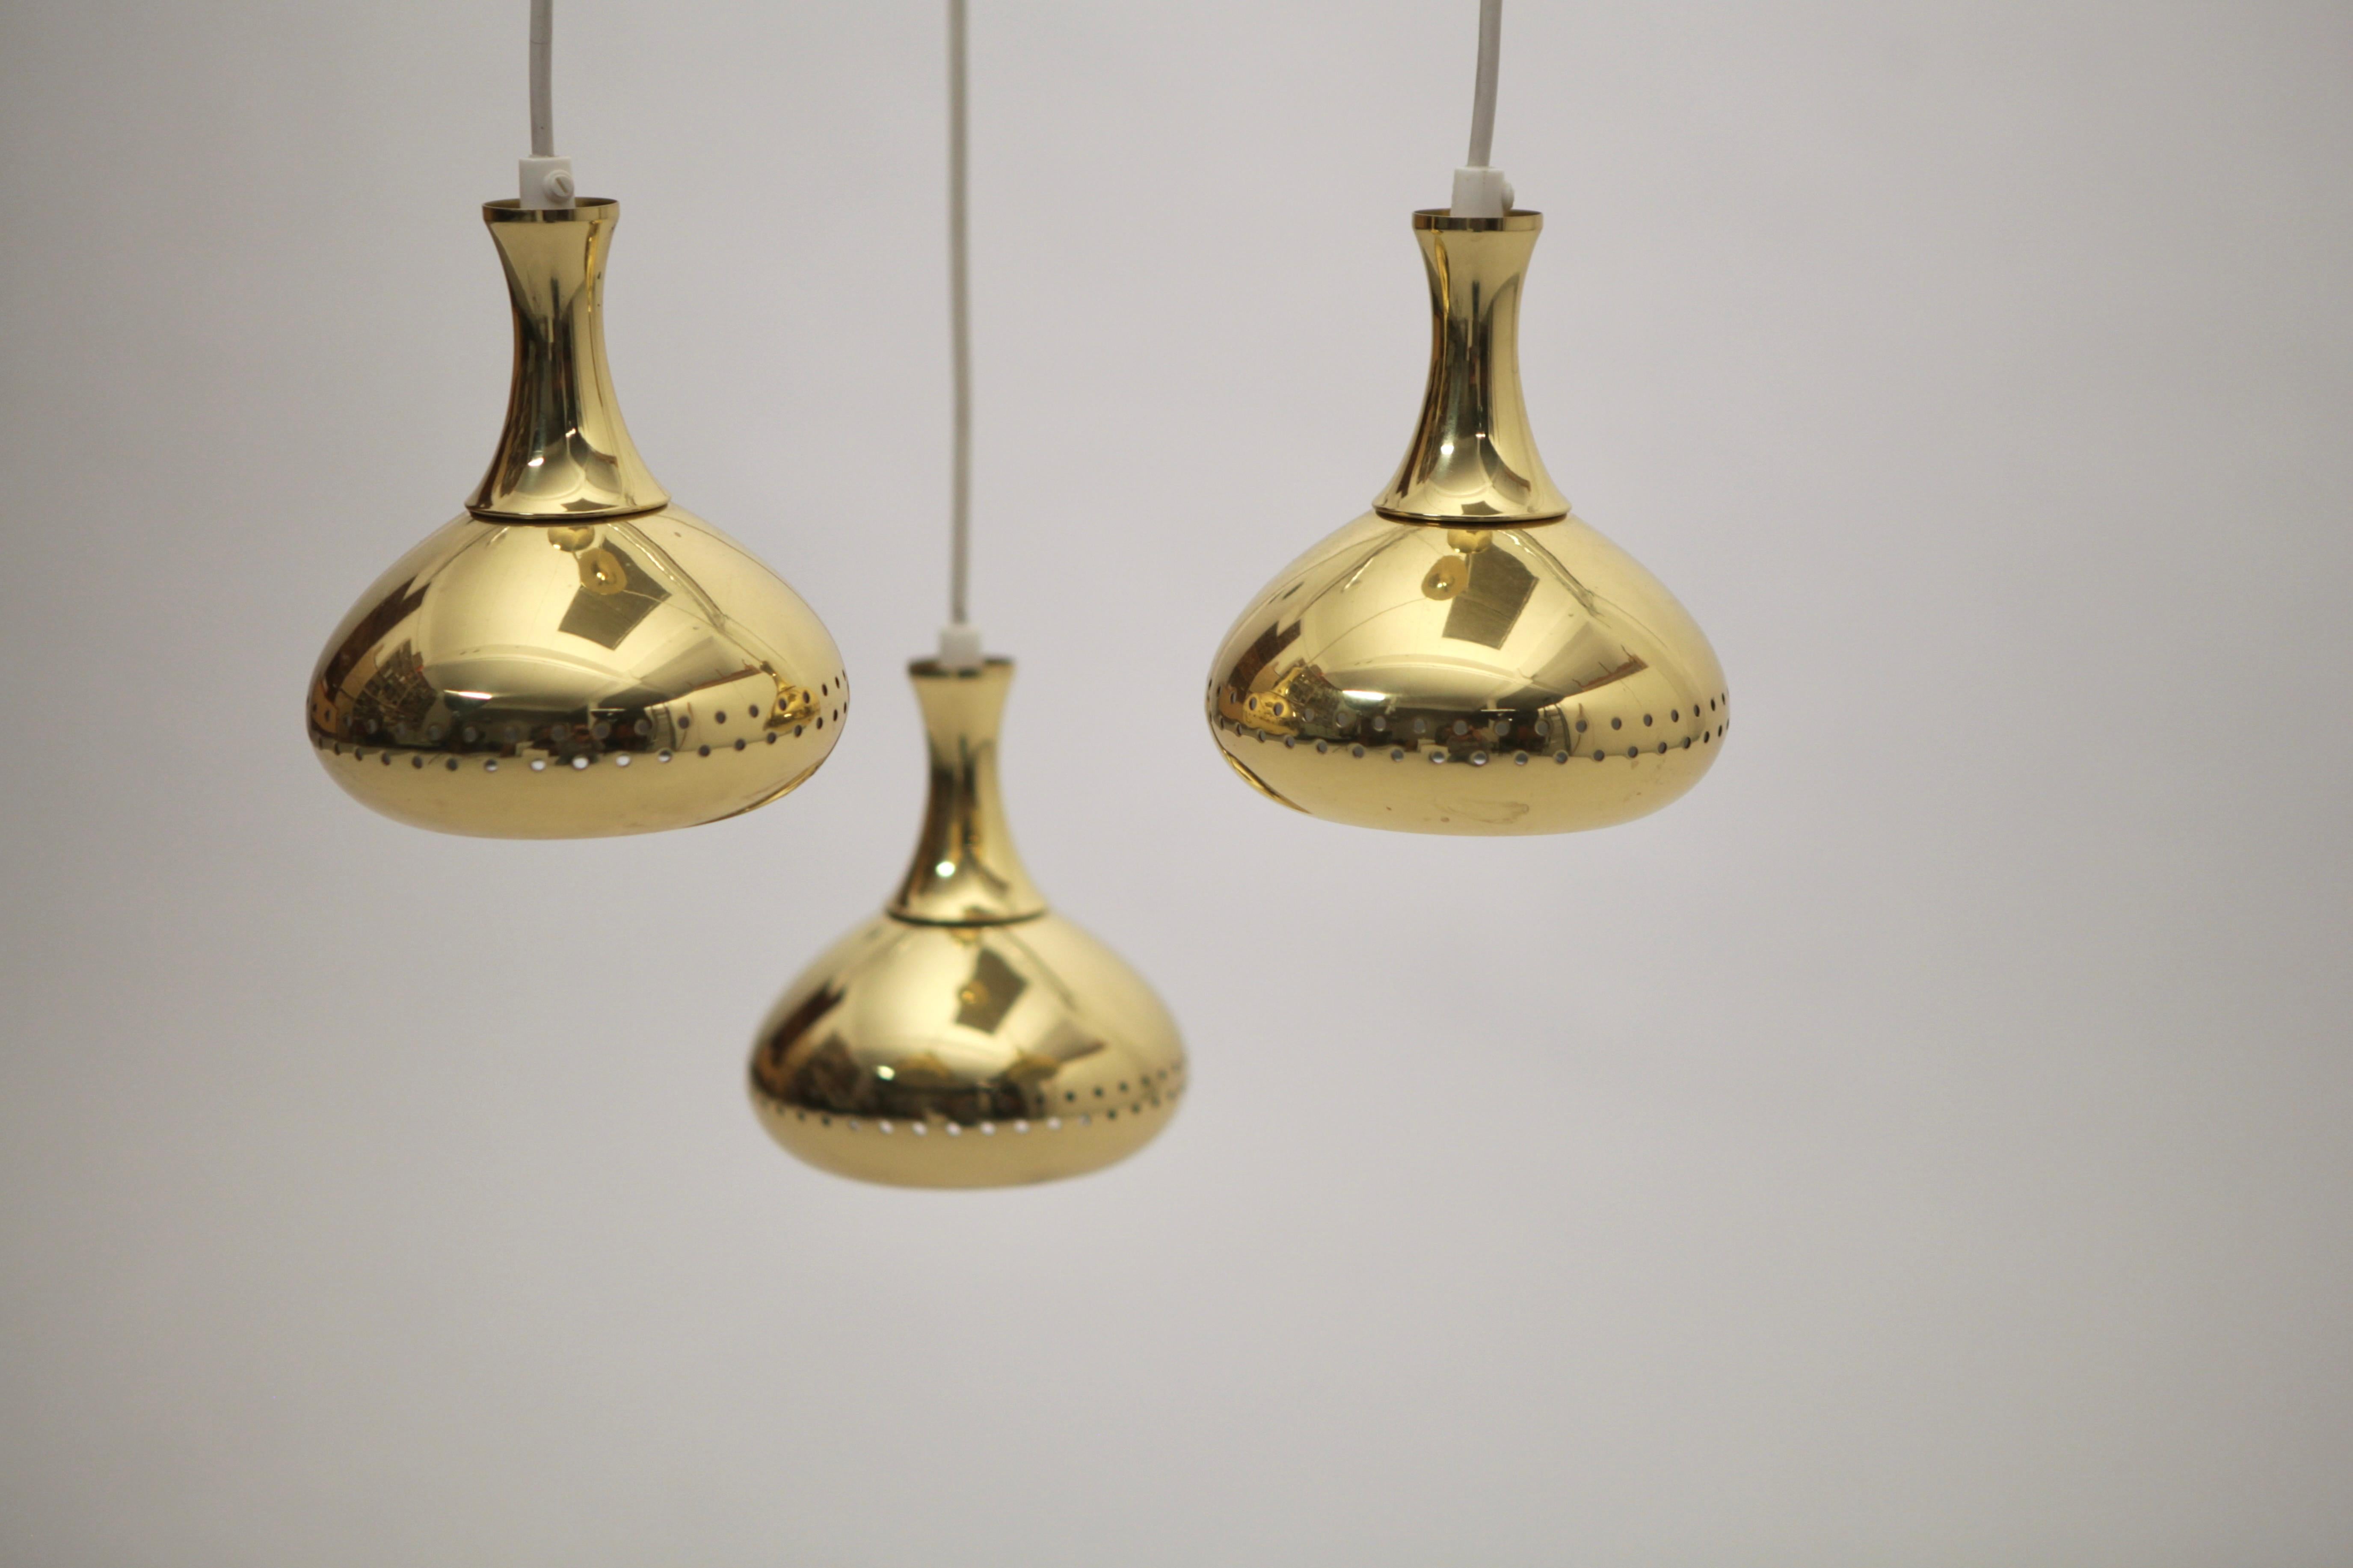 Scandinavian Modern Hans-Agne Jakobsson, 3 Pendant Ceiling Light, Brass, Sweden 1960s. For Sale